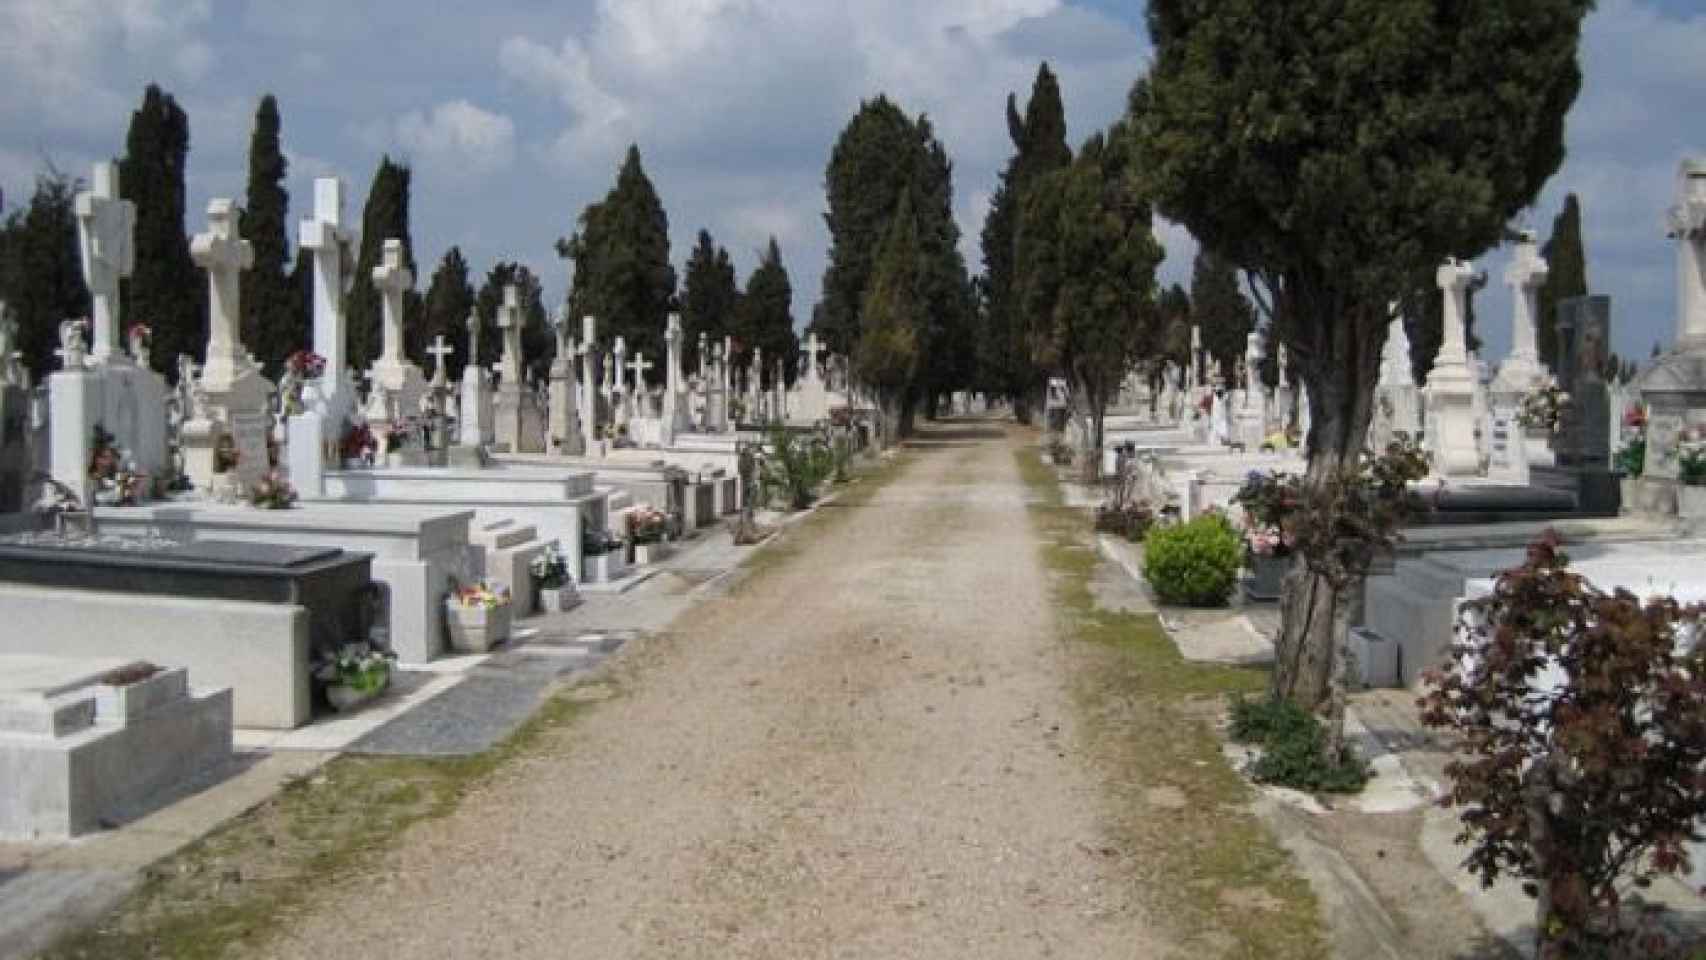 cementerio del carmen valladolid 1